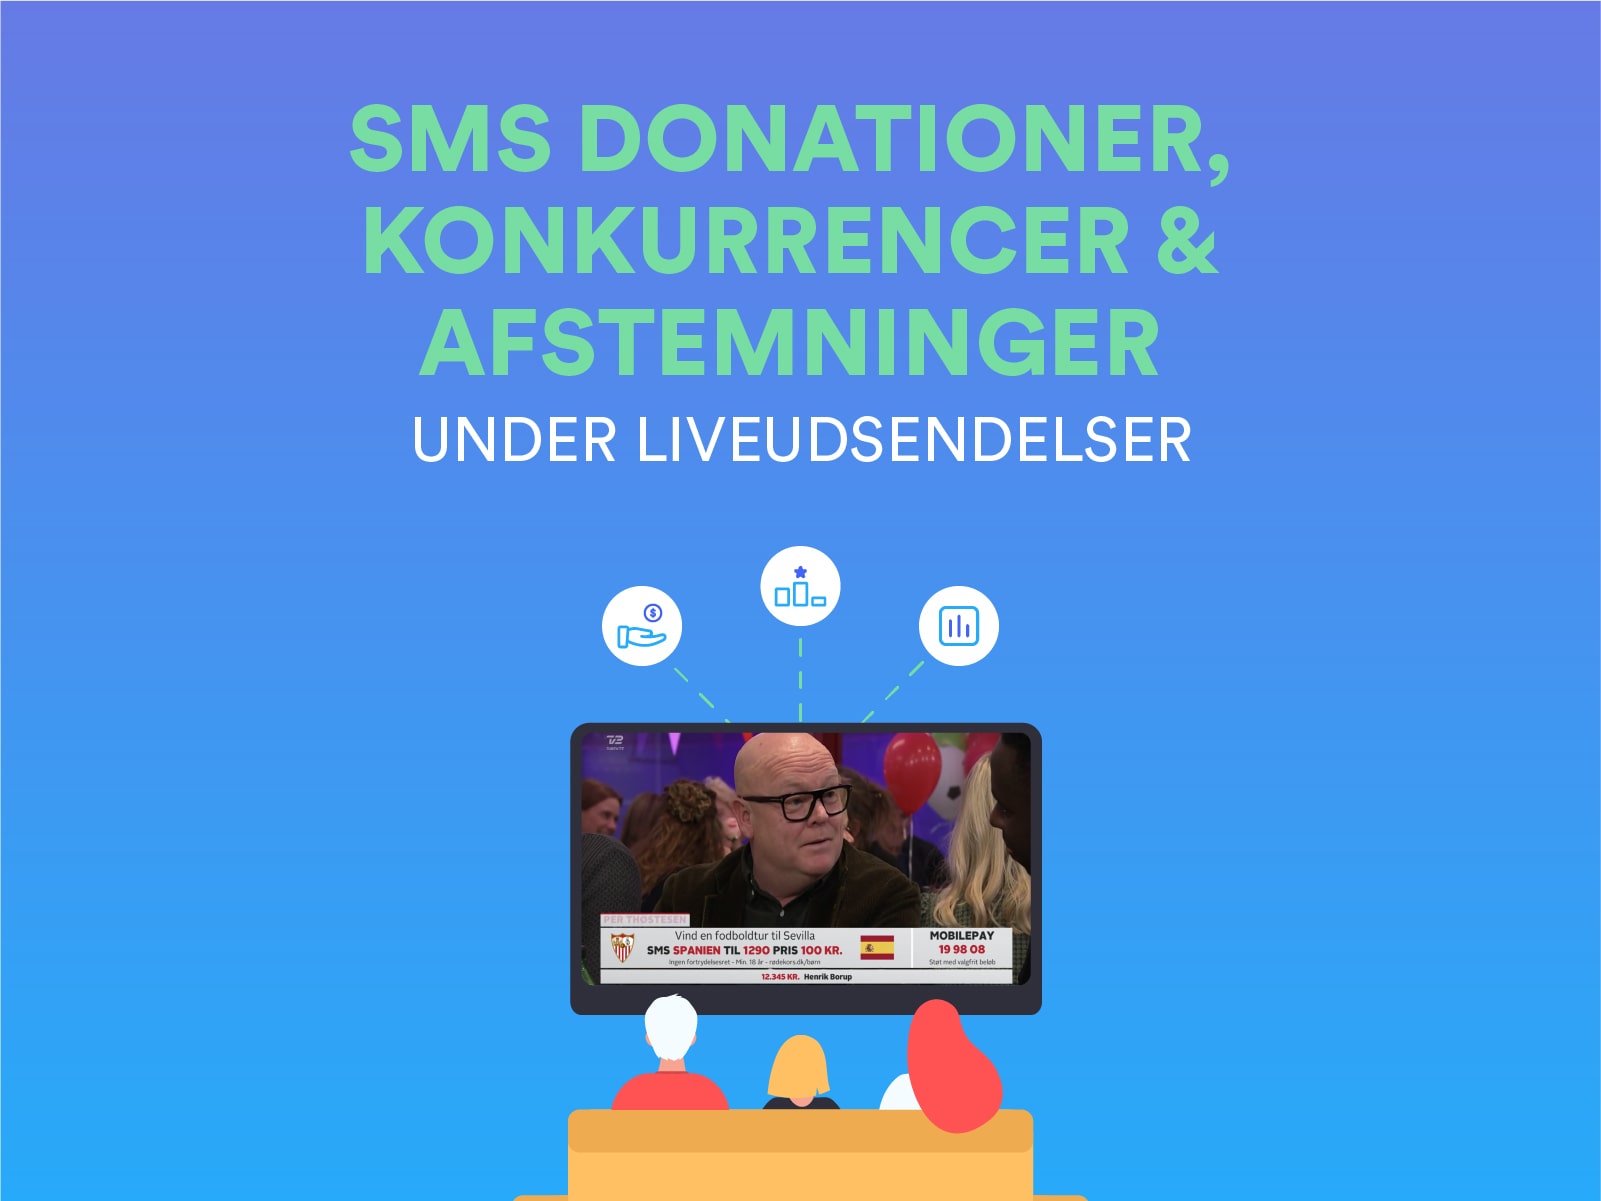 Brug af SMS donationer, SMS konkurrencer og SMS afstemninger ved liveudsendelser